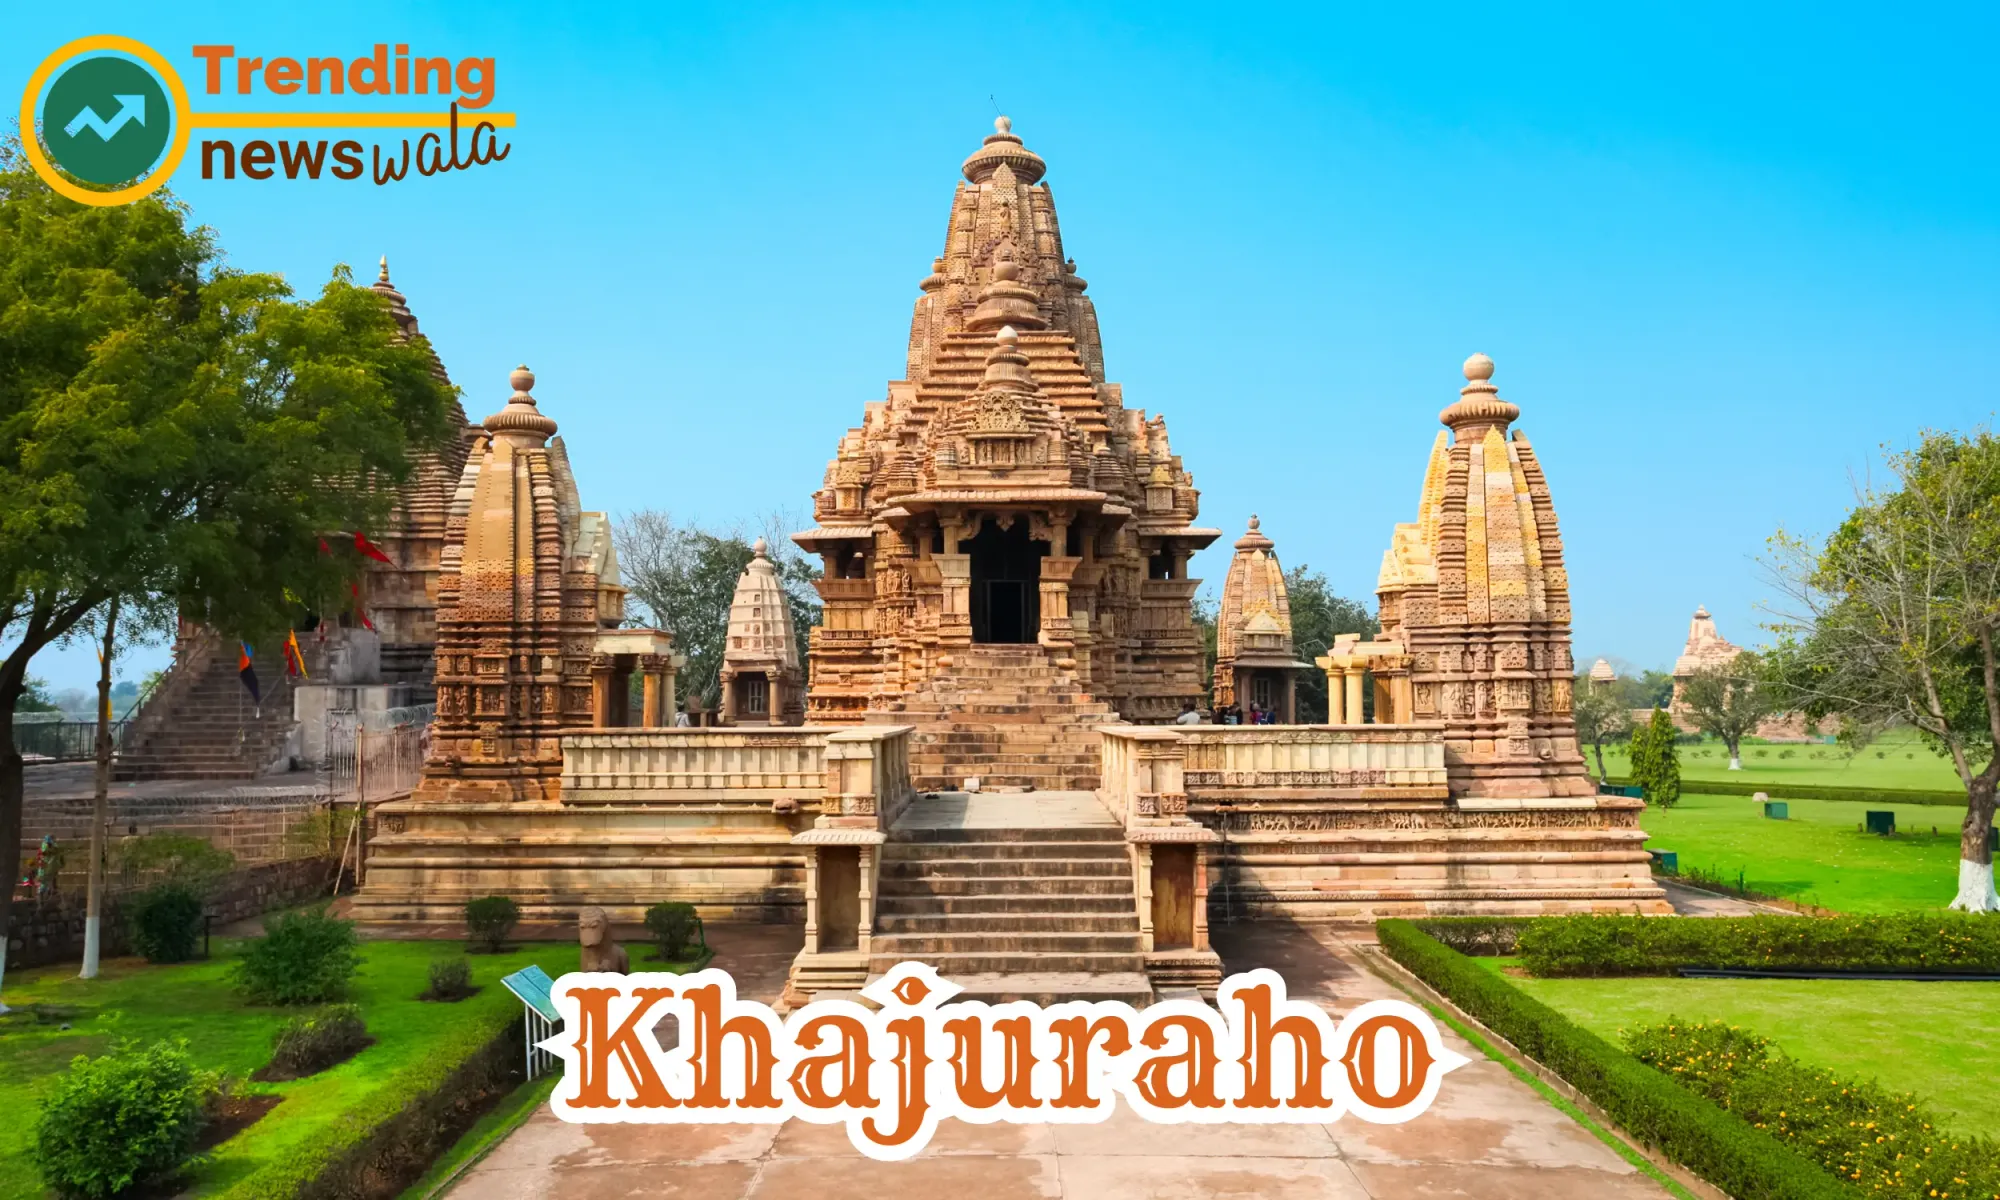 Khajuraho, located in the Chhatarpur district of Madhya Pradesh, India